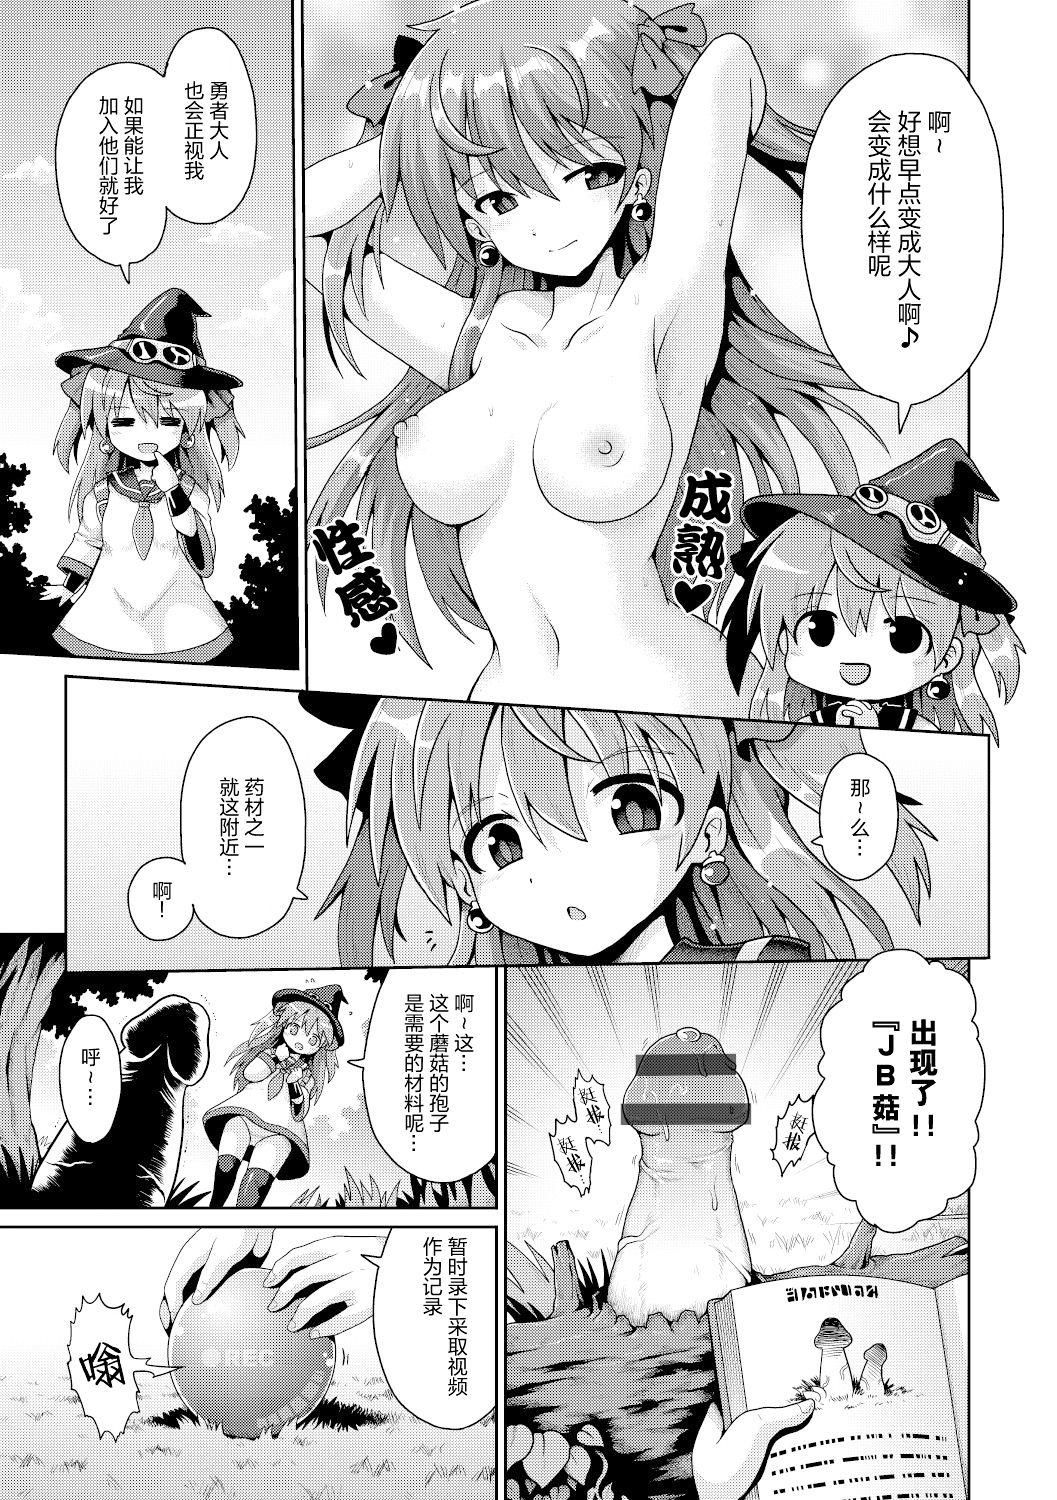 Spying Tensai mado shojo no yuutsu Rub - Page 6